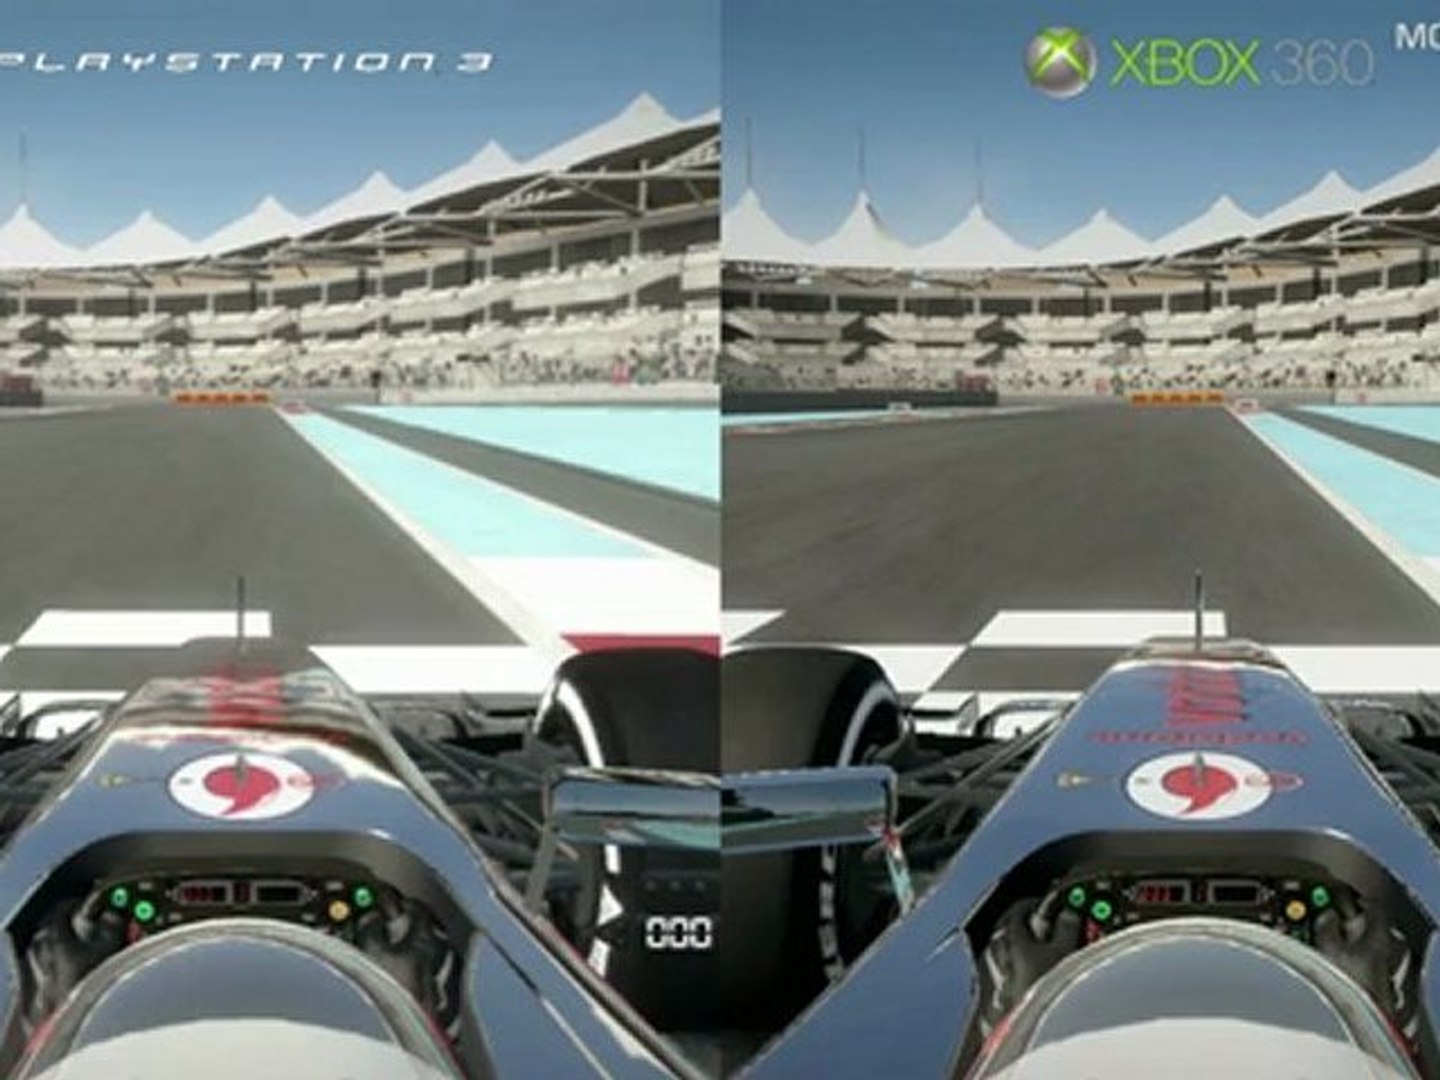 F1 2012 Demo - PS3 vs Xbox 360 - Graphics Comparison - video Dailymotion